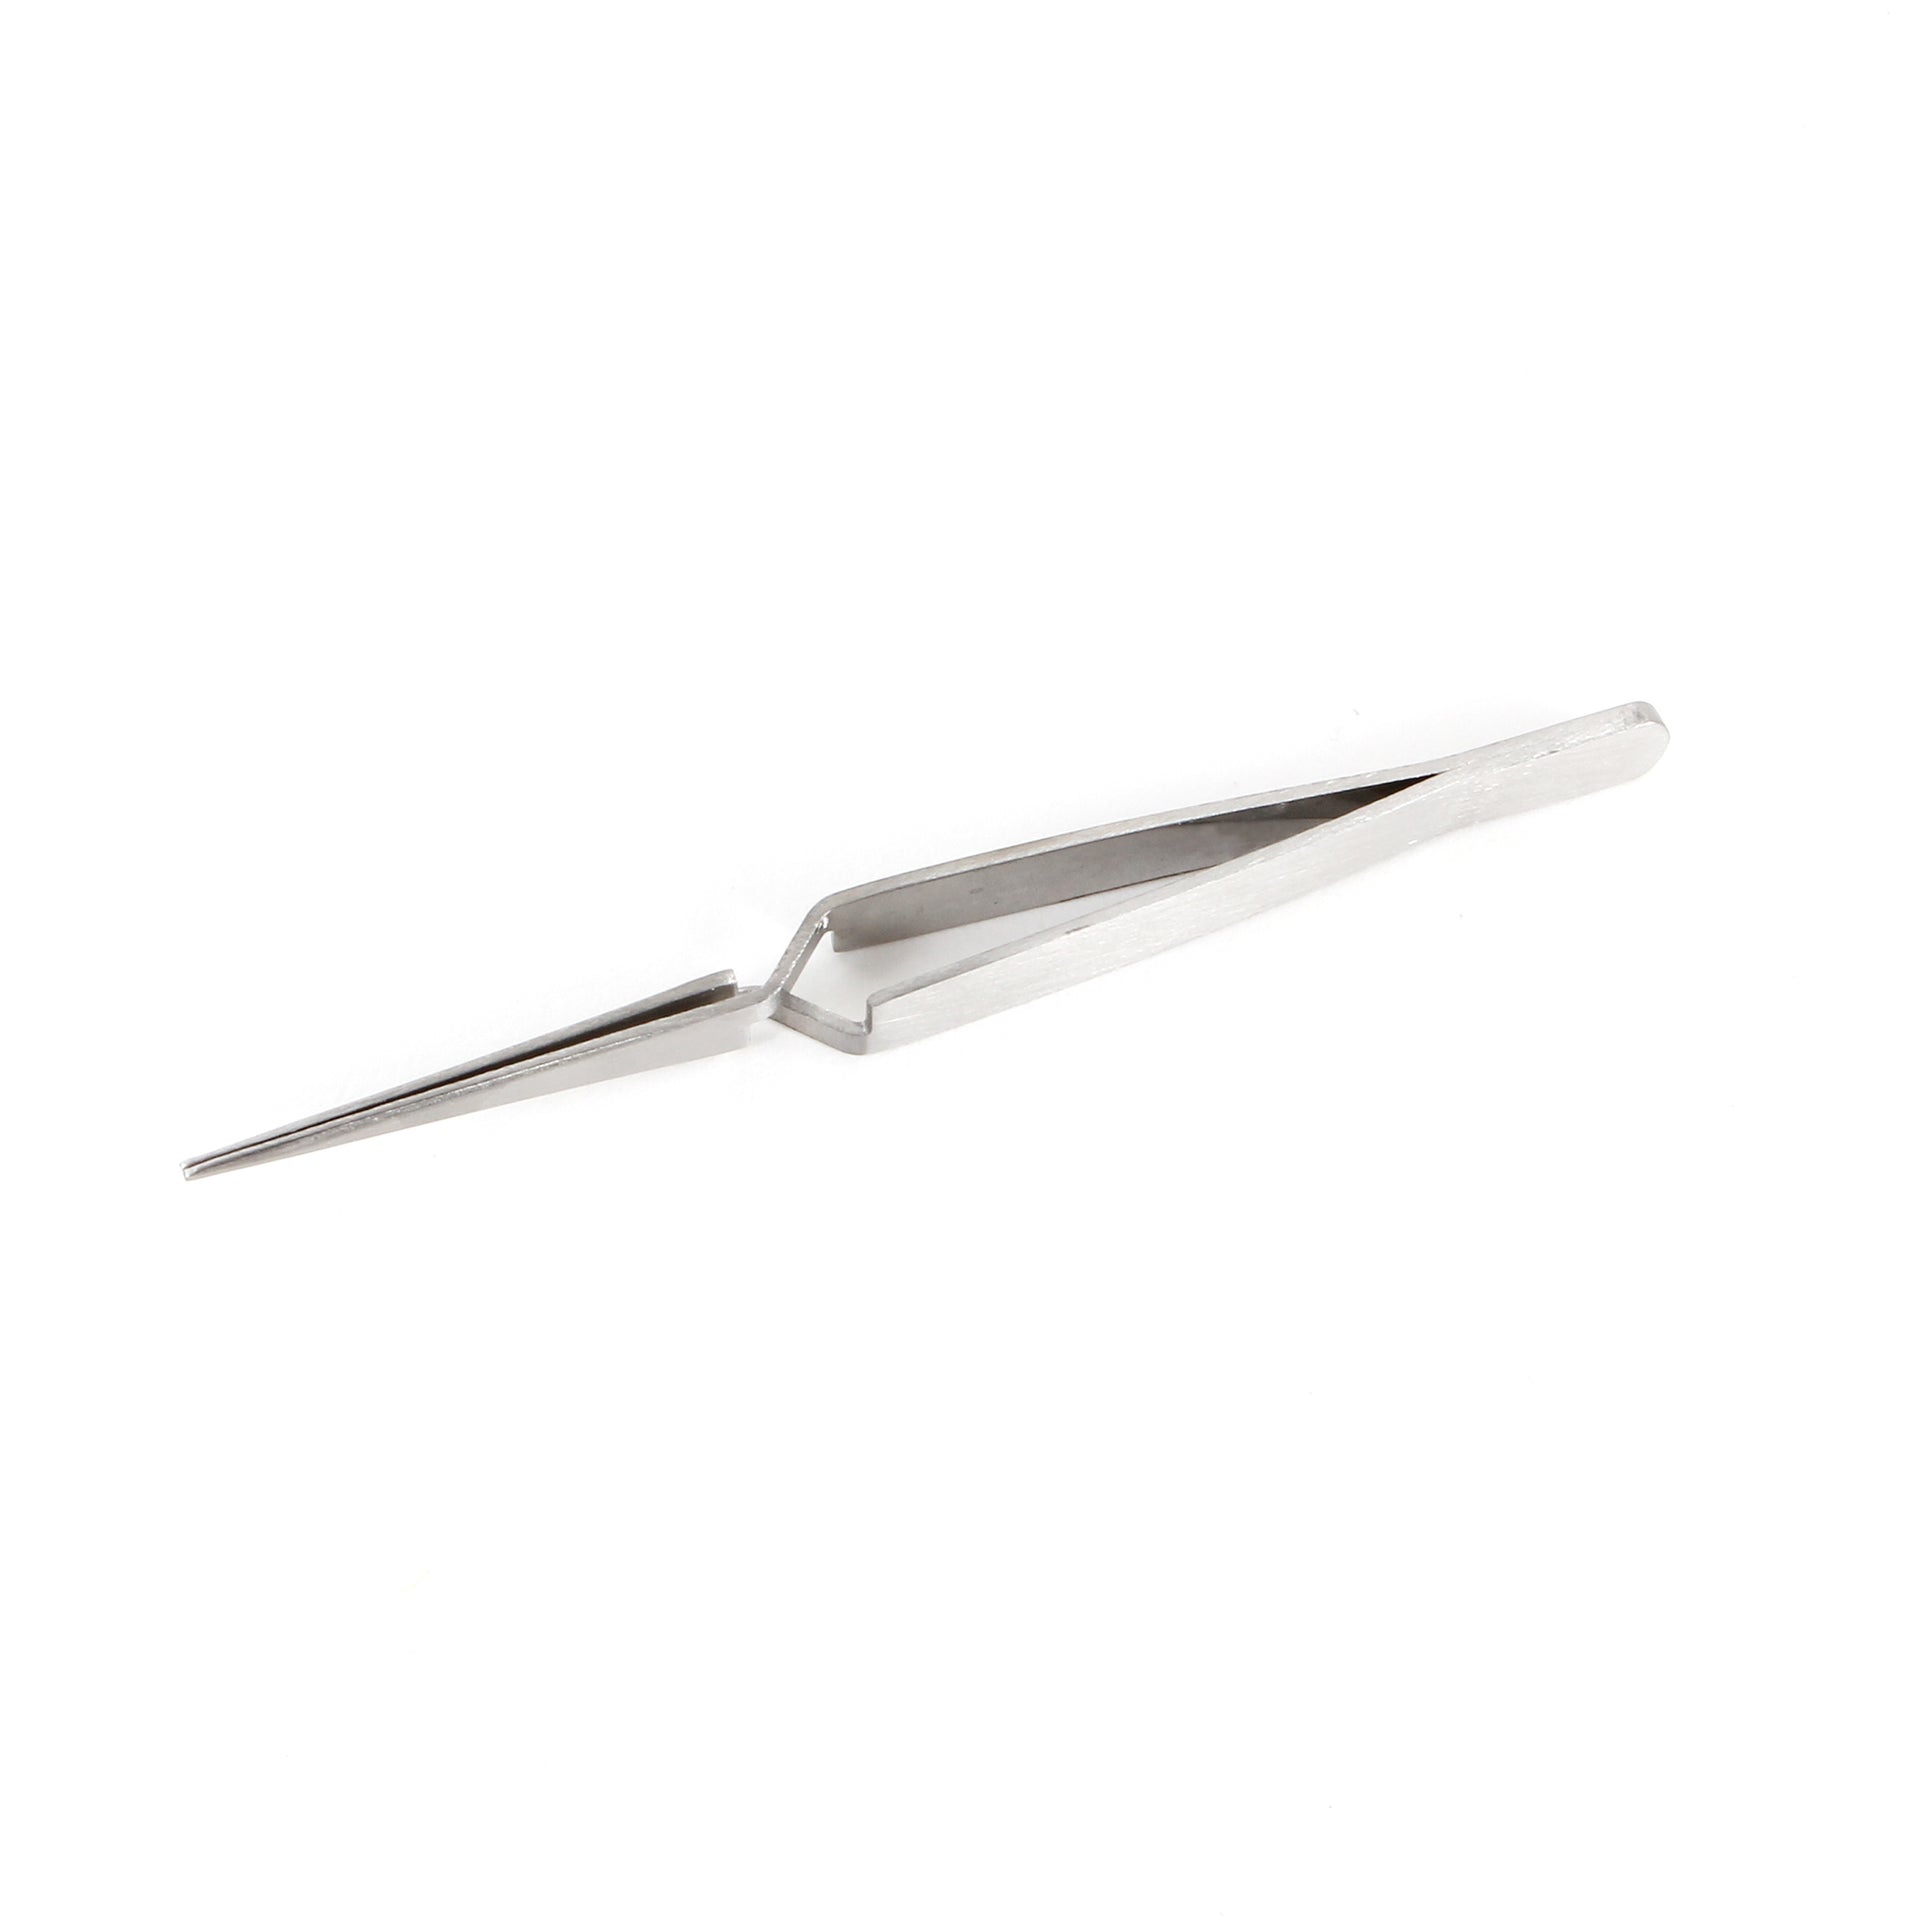  Fine-Tip - Ergonomic Reverse Grip - Craft Tweezers - Gray